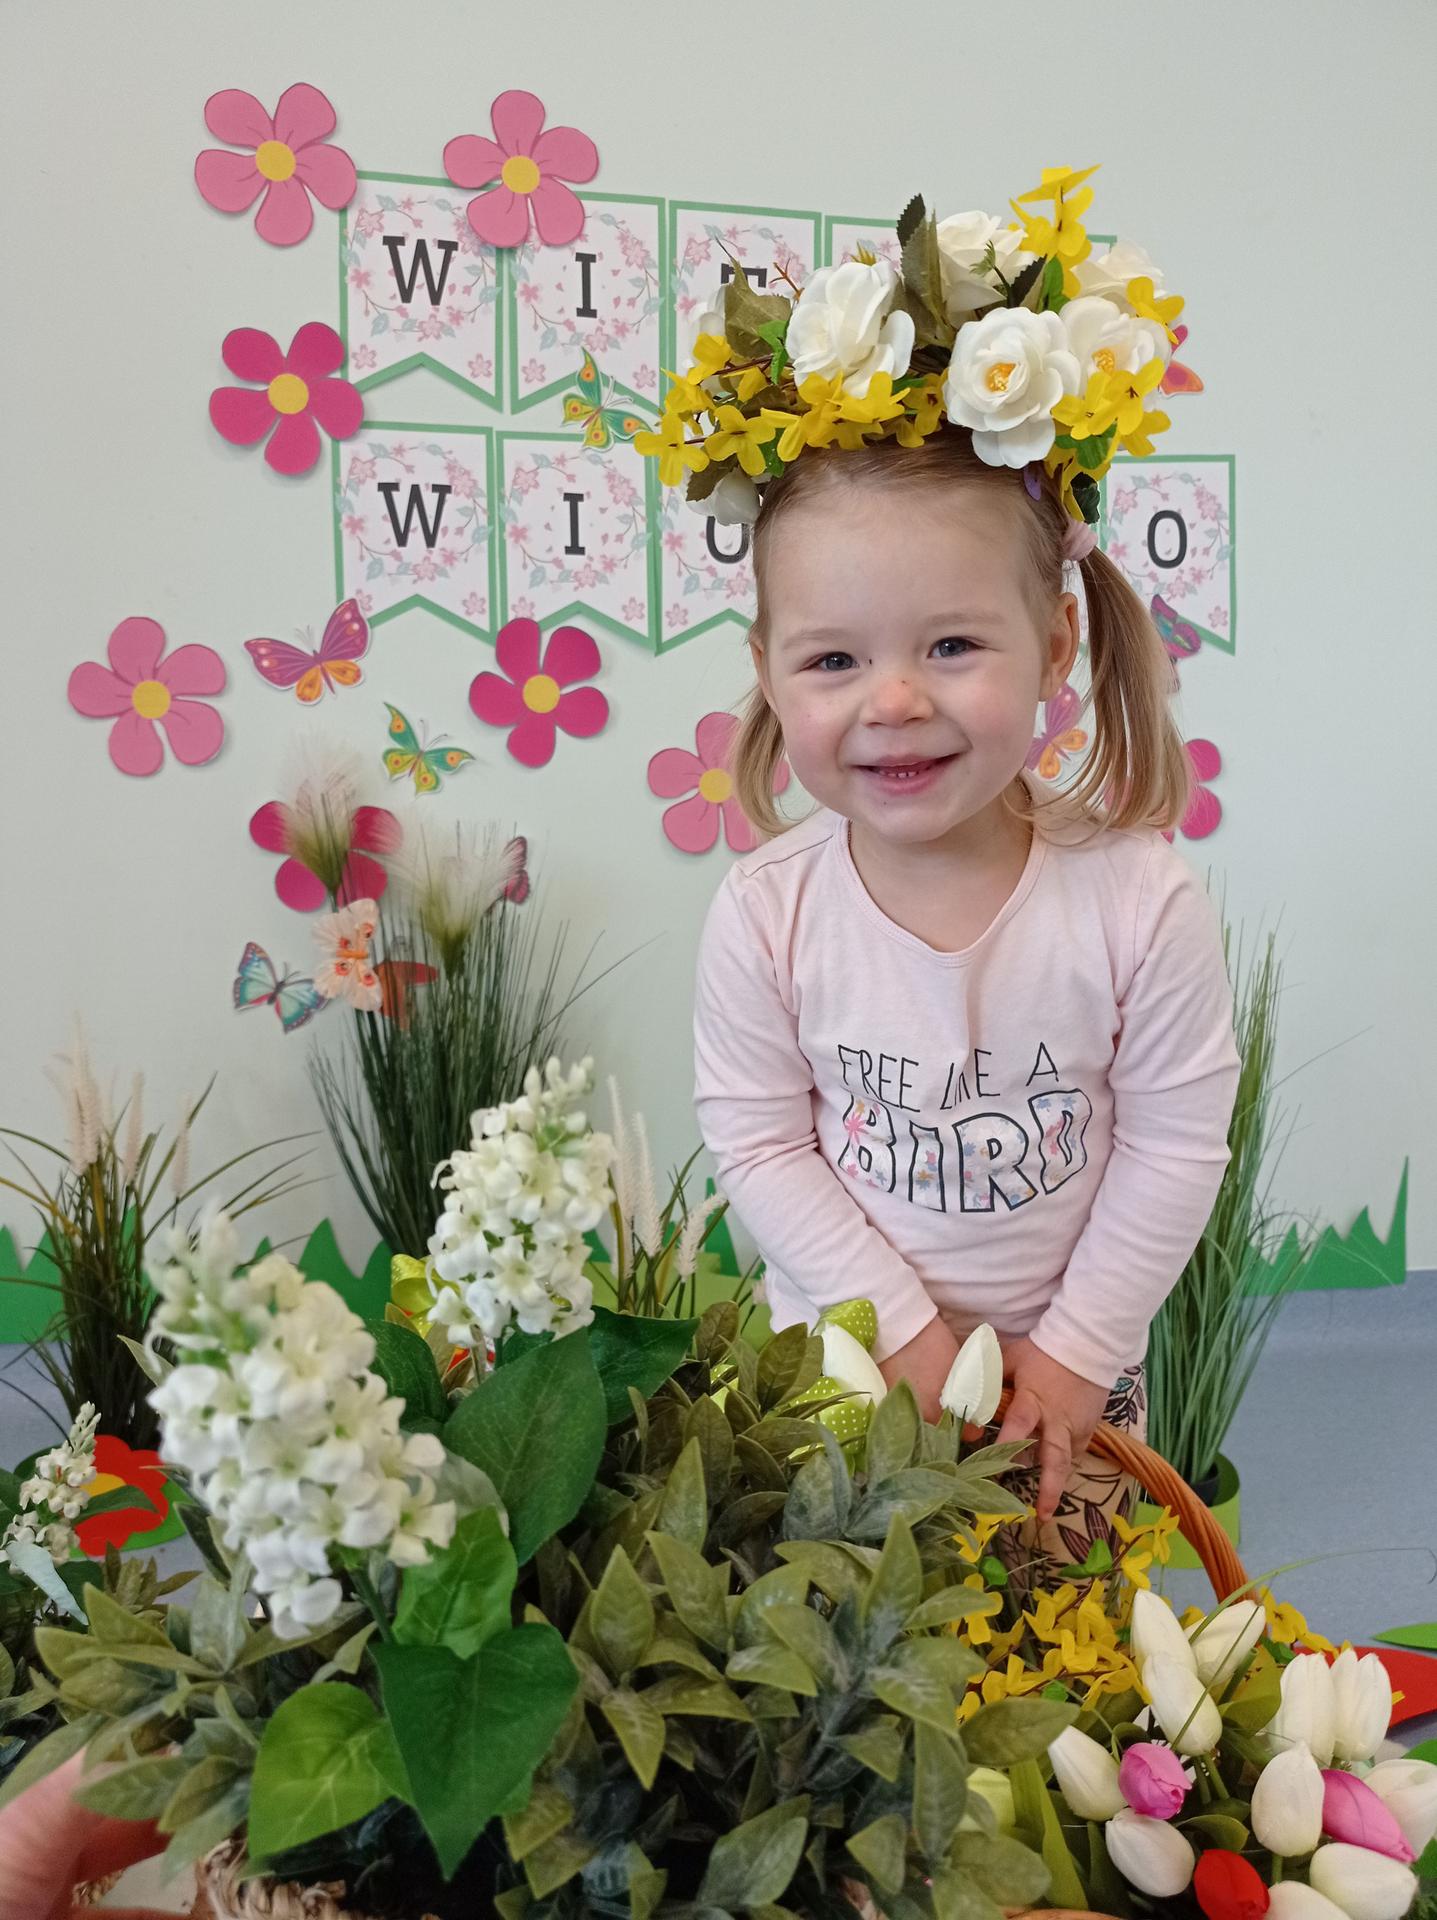 Na zdjęciu widać dziewczynkę ok 3 lat z wiankiem z kwiató na głowie. Dziewczynka jest uśmiechnięta. Za dziewczynką widać napis WITAJ WIOSNO. Dziewczynka stoi wśród kwiatów.